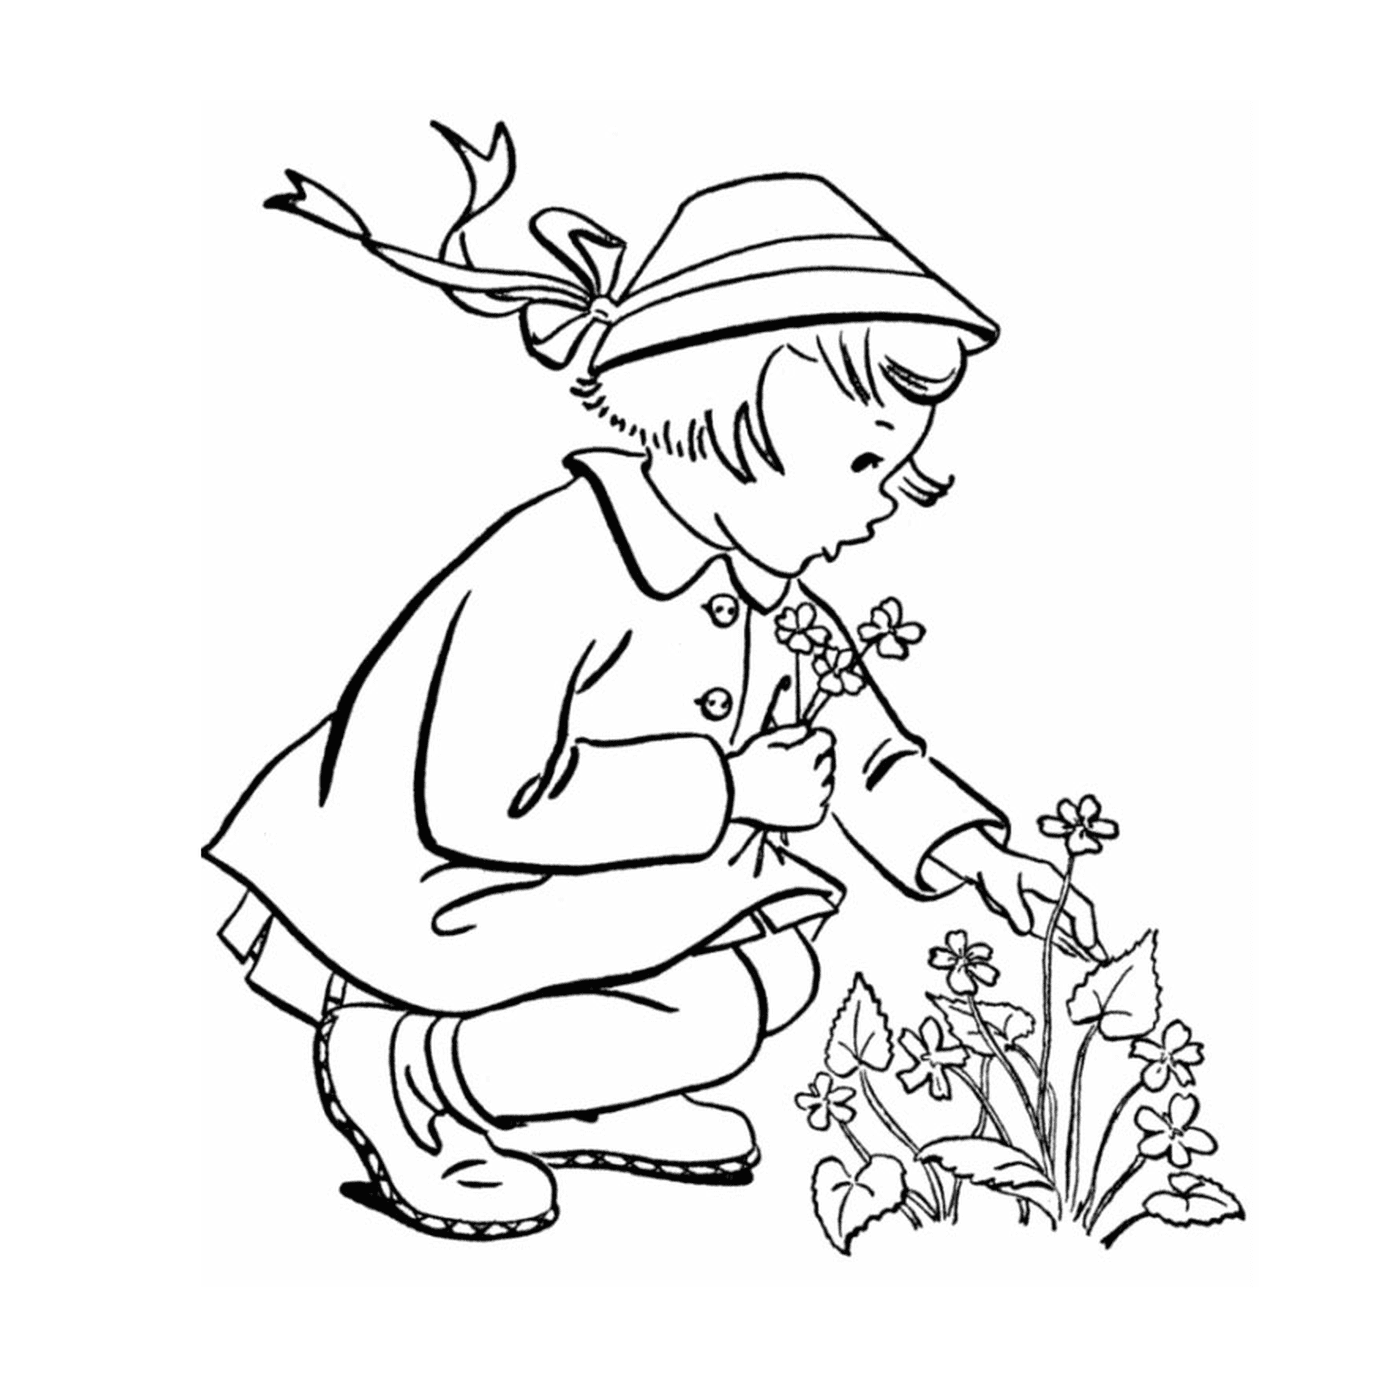  Маленькая девочка, стоящая на коленях, чтобы посадить цветок 